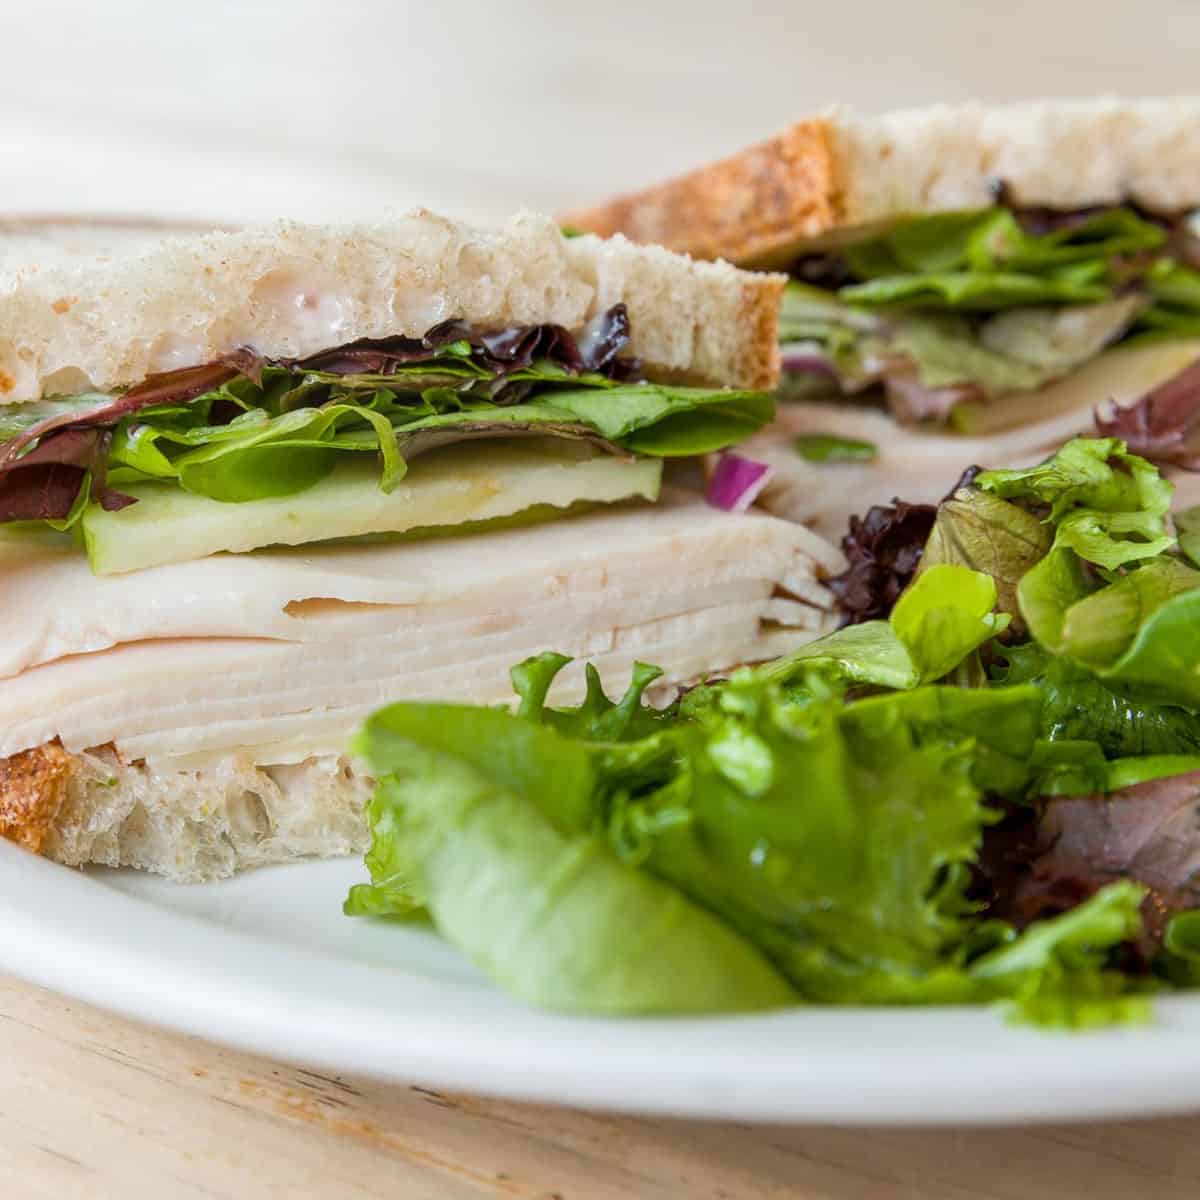 August First - Turkey Sandwich